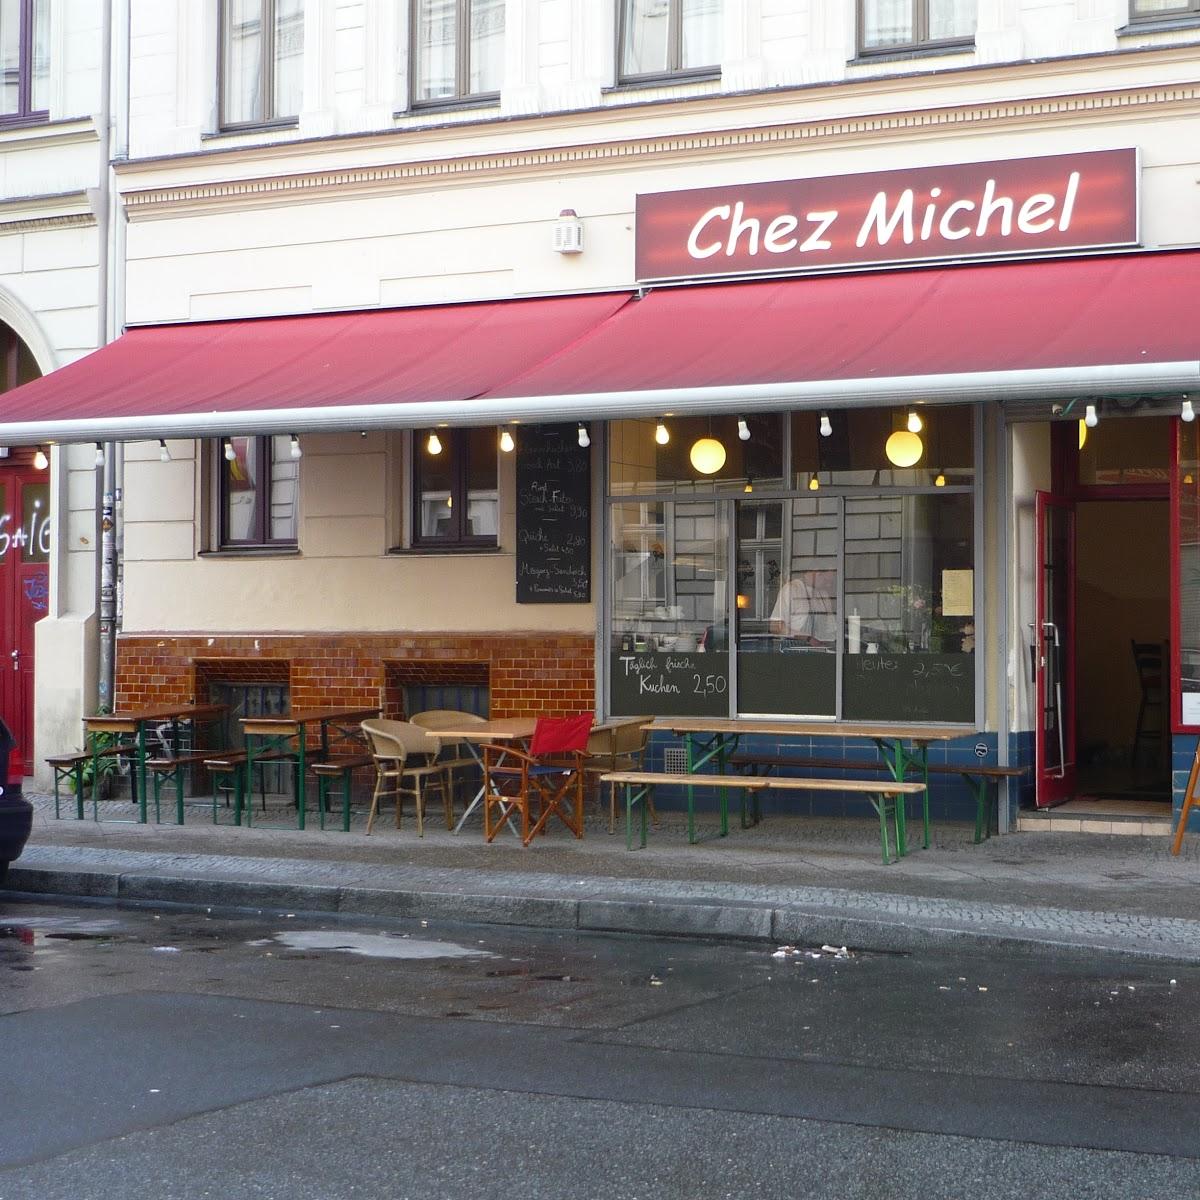 Restaurant "Chez Michel" in Berlin